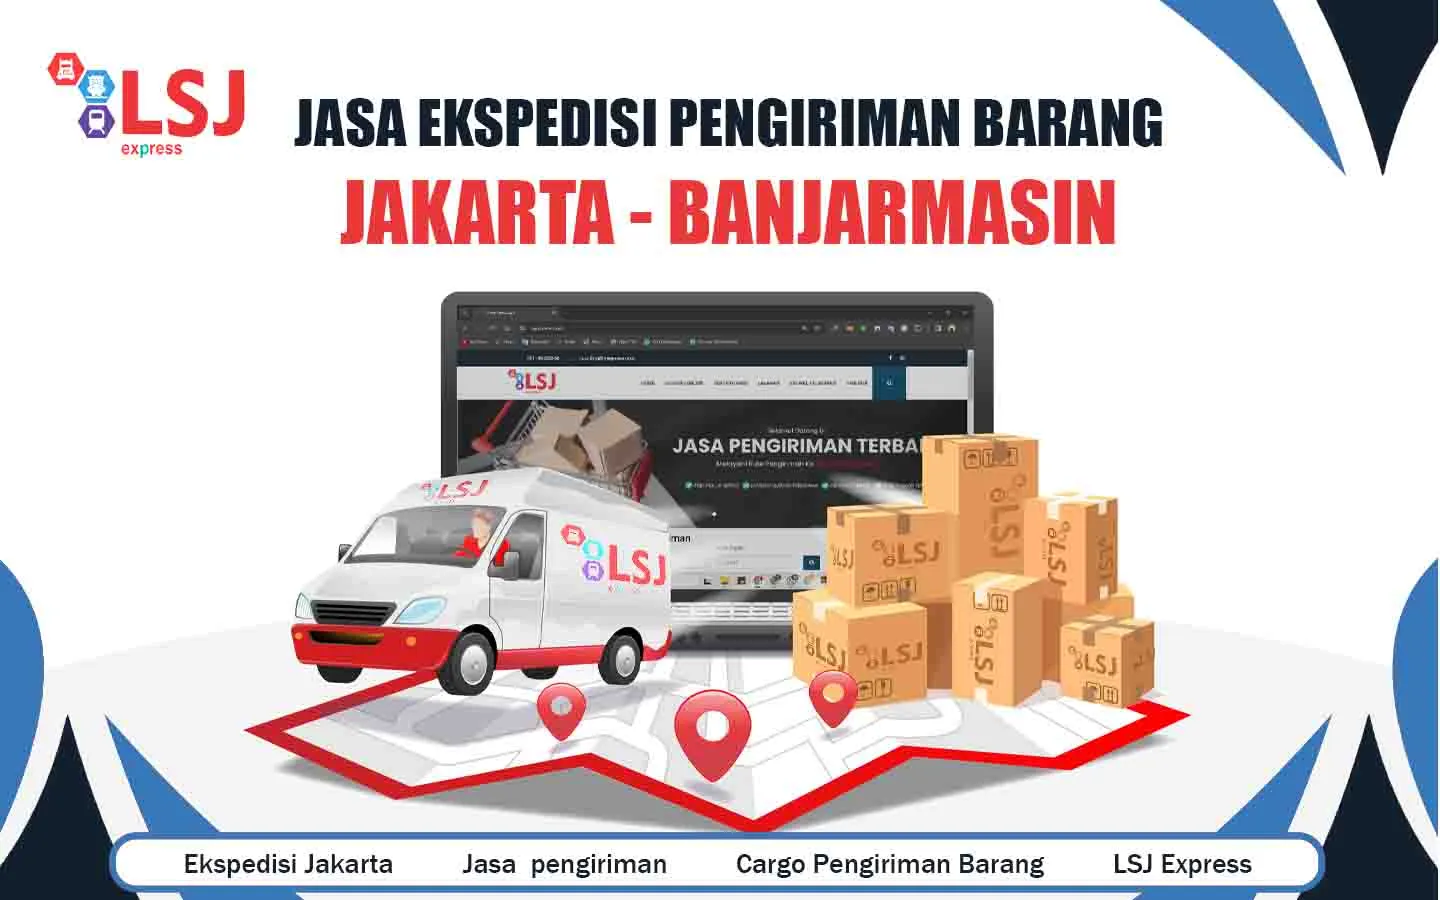 Jasa ekspedisi pengiriman barang murah dari Jakarta ke Banjarmasin